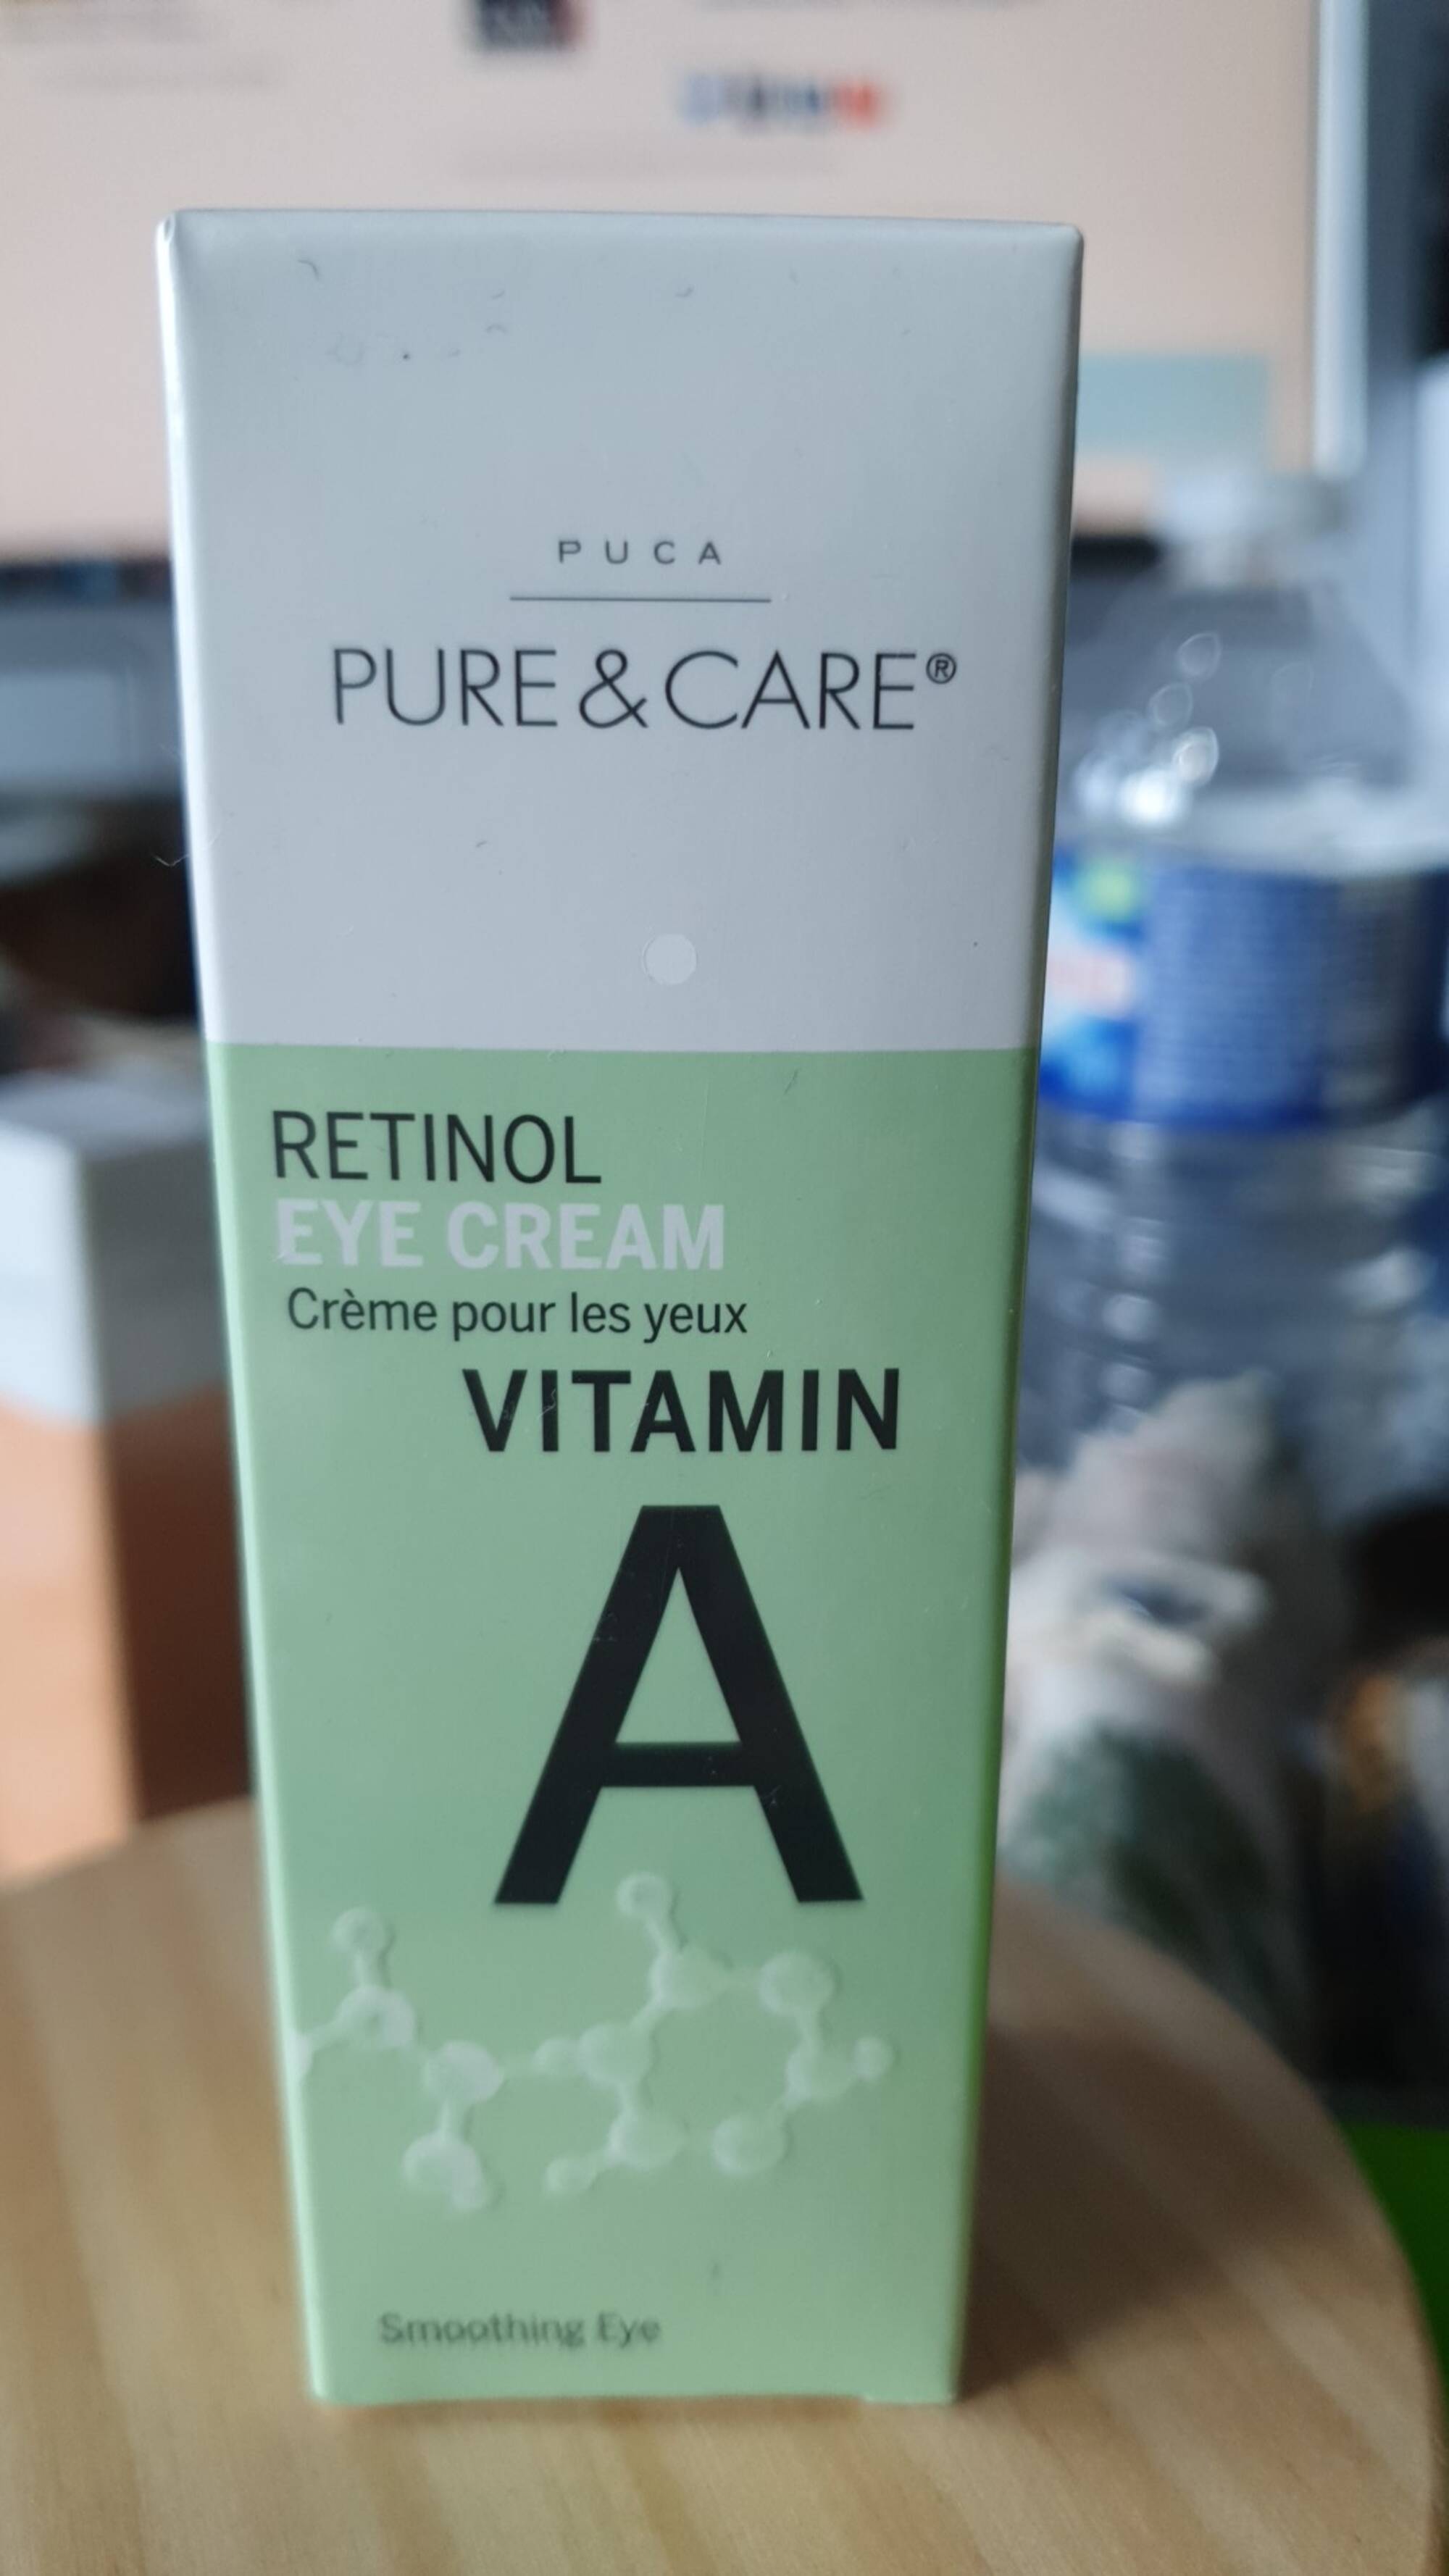 PURE & CARE - Retinol crème pour les yeux vitamin A